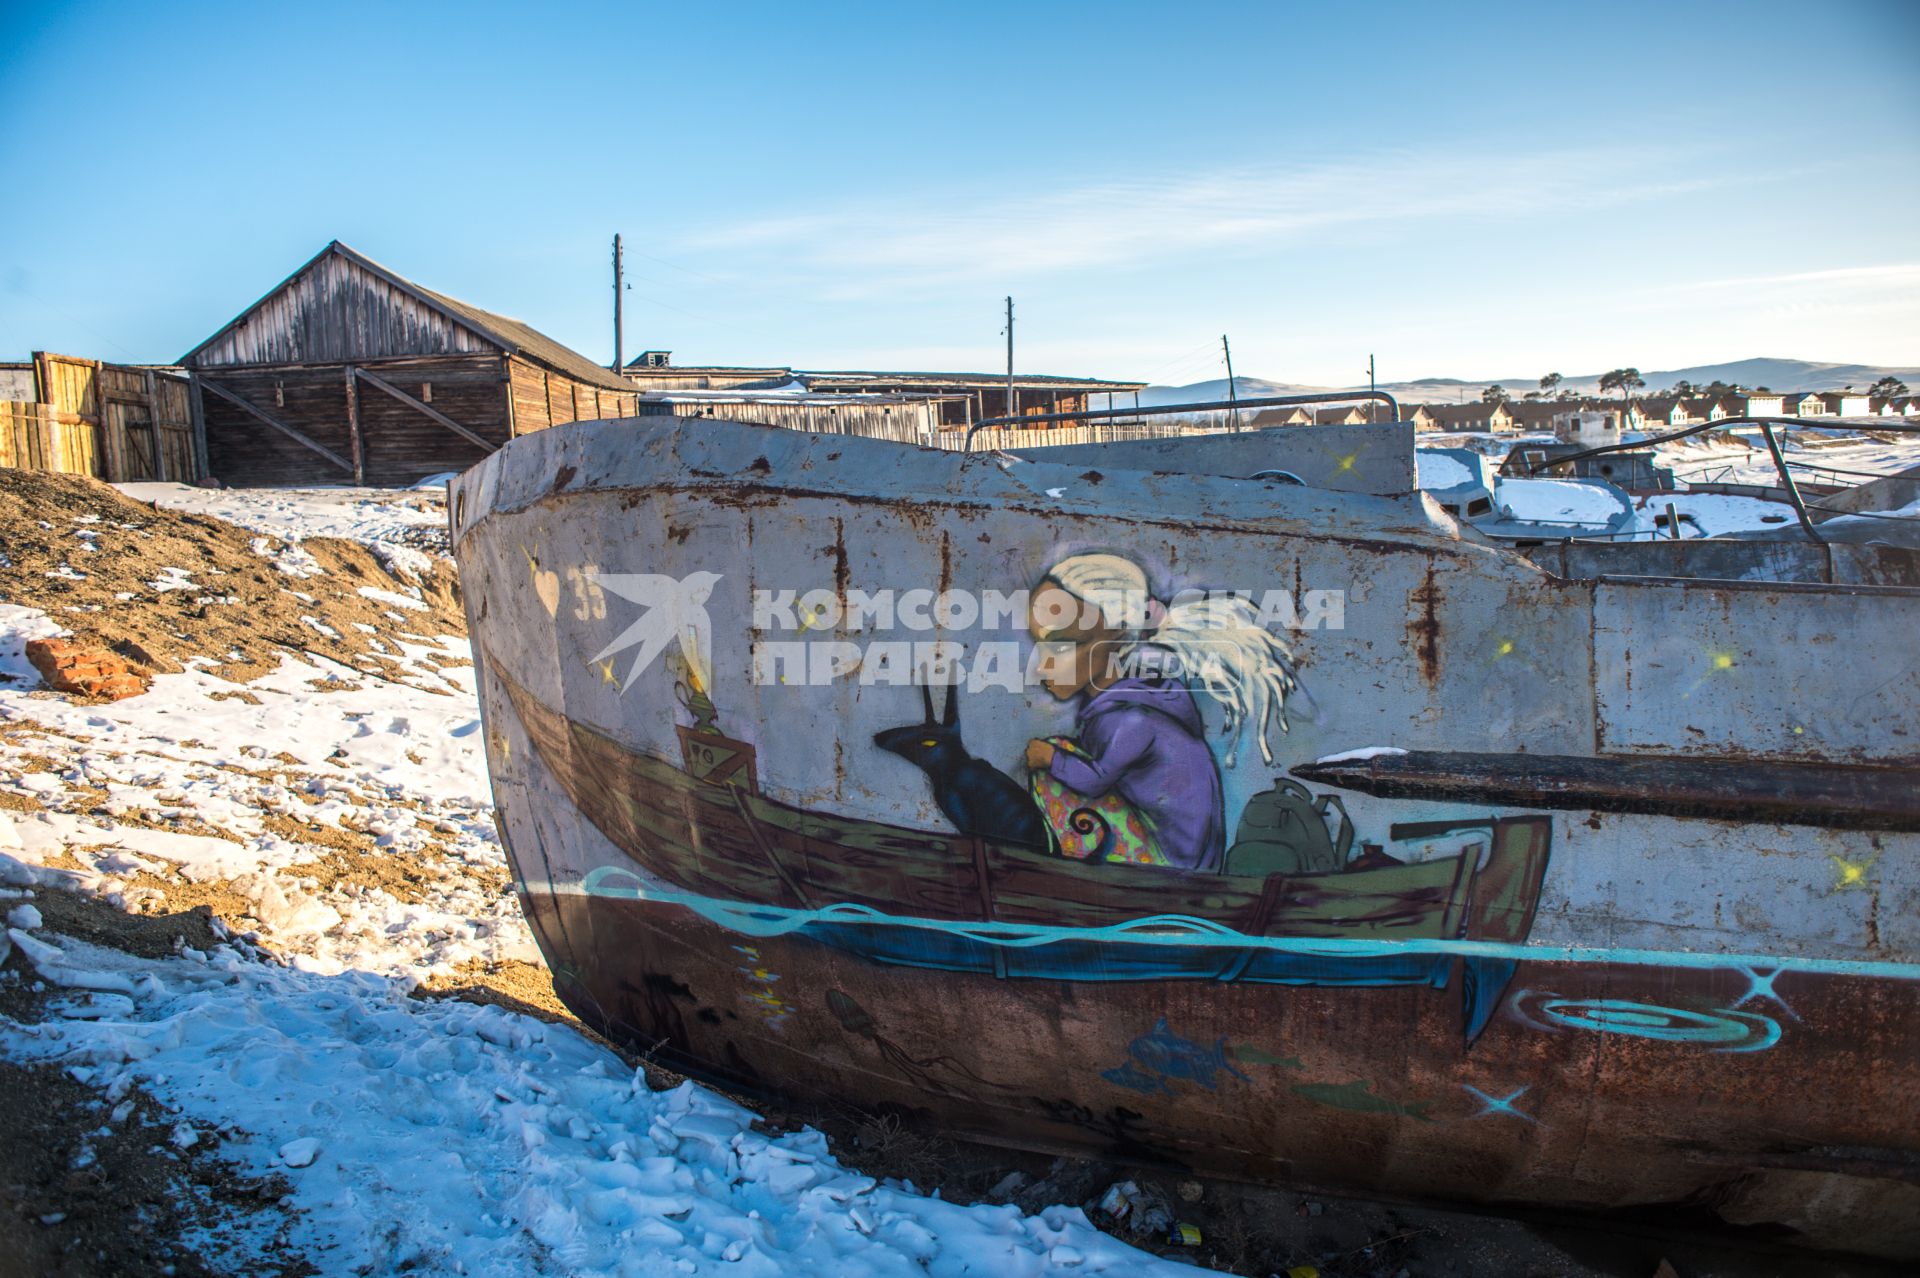 Остров Ольхон, поселок Хужир.   Граффити  на заброшенных лодках.